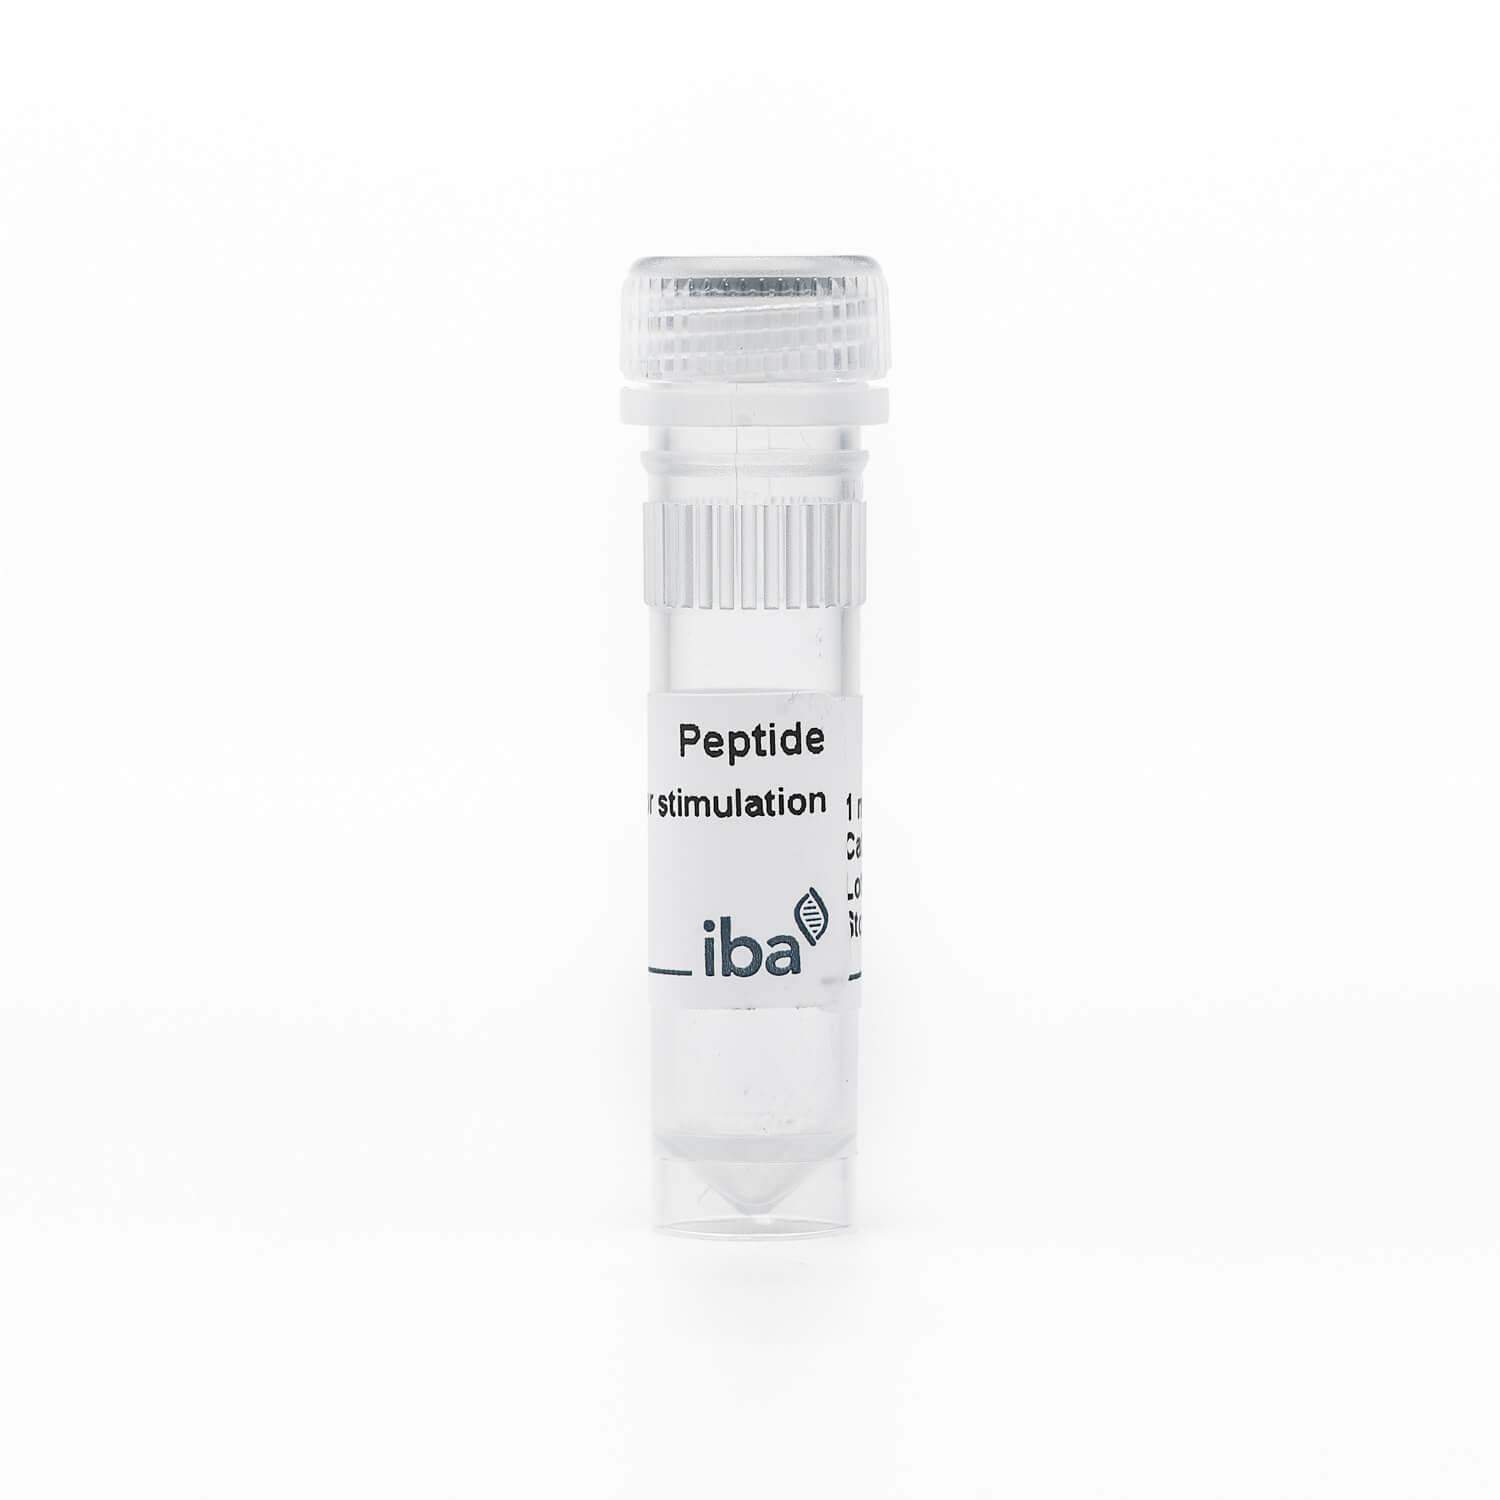 HA-1H peptide VLHDDLLEA (HLA-A*0201)